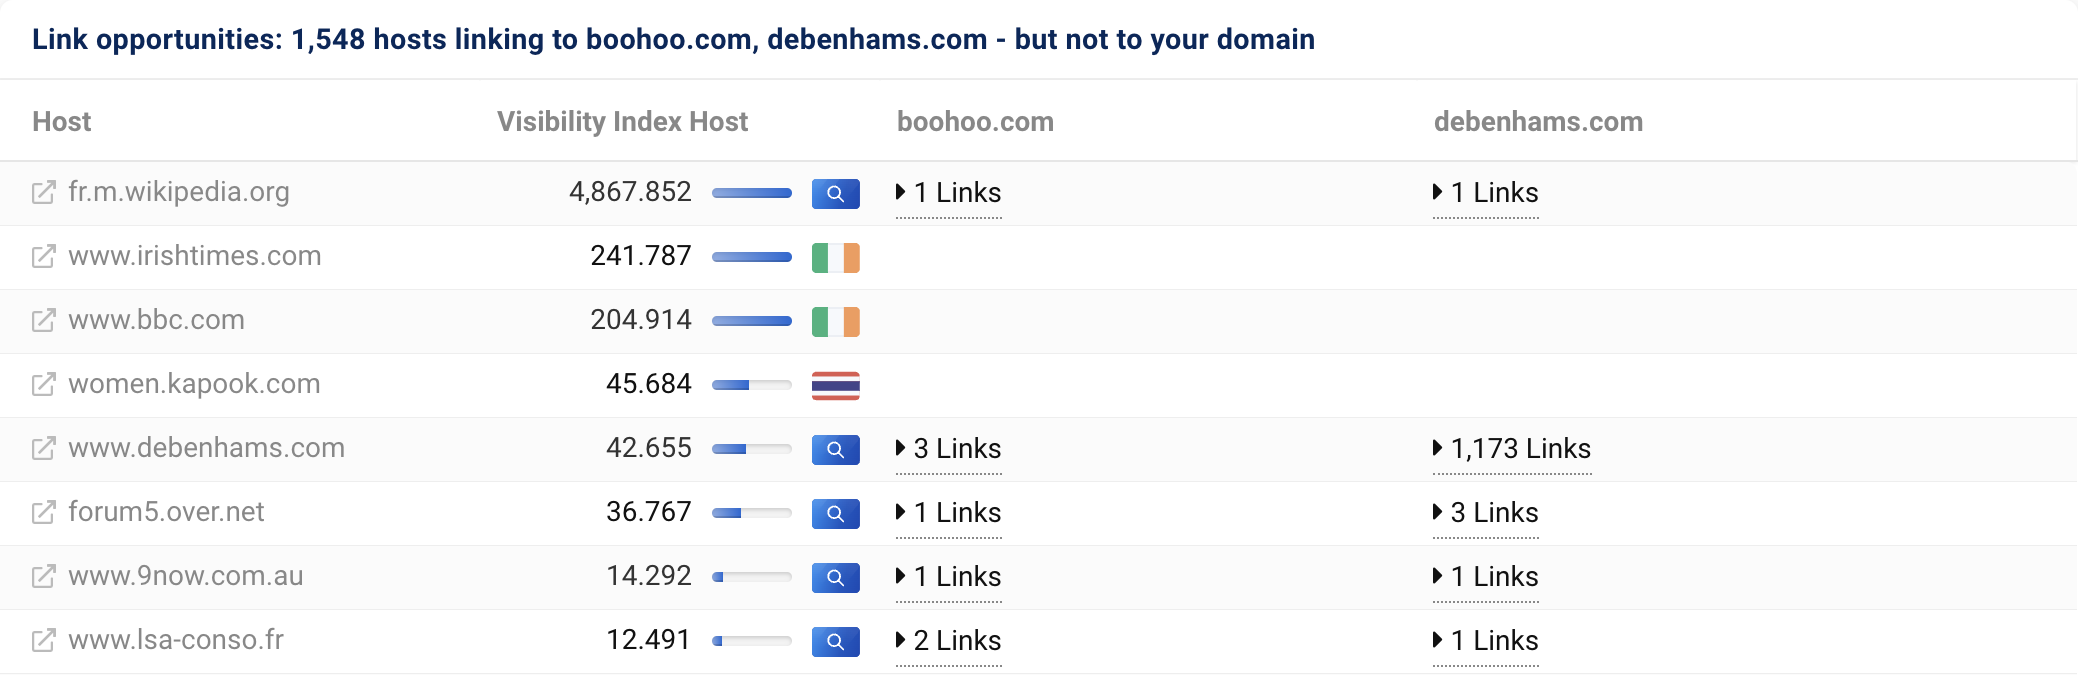 1,548 のホストが boohoo.com と debenhams.com にリンクしていますが、私たちのドメイン asos.com にはリンクしていません。